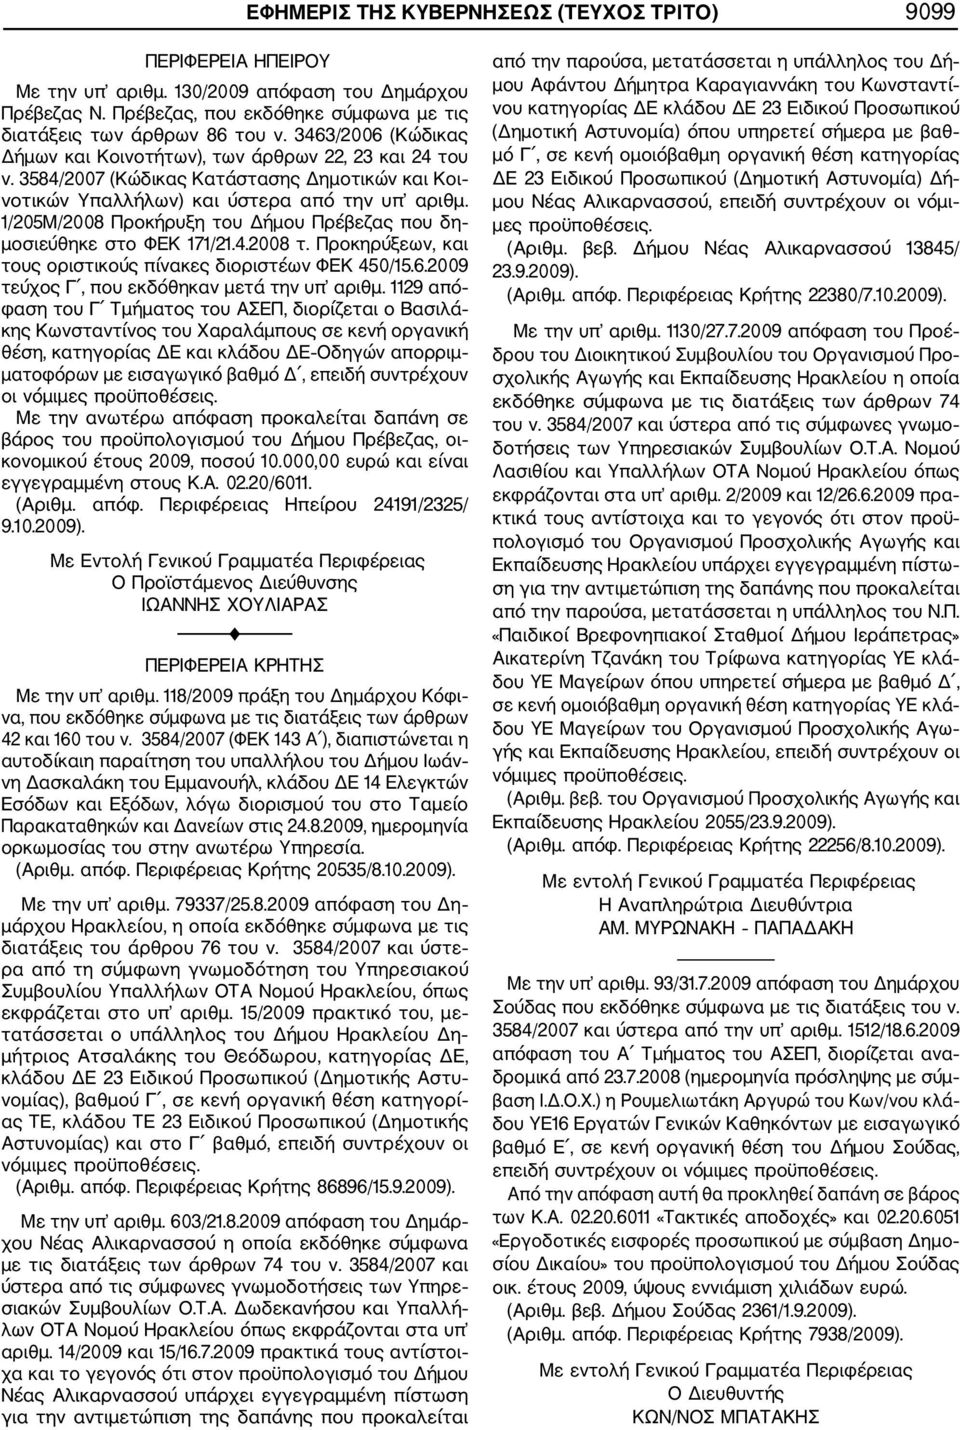 1/205Μ/2008 Προκήρυξη του Δήμου Πρέβεζας που δη μοσιεύθηκε στο ΦΕΚ 171/21.4.2008 τ. Προκηρύξεων, και τους οριστικούς πίνακες διοριστέων ΦΕΚ 450/15.6.2009 τεύχος Γ, που εκδόθηκαν μετά την υπ αριθμ.